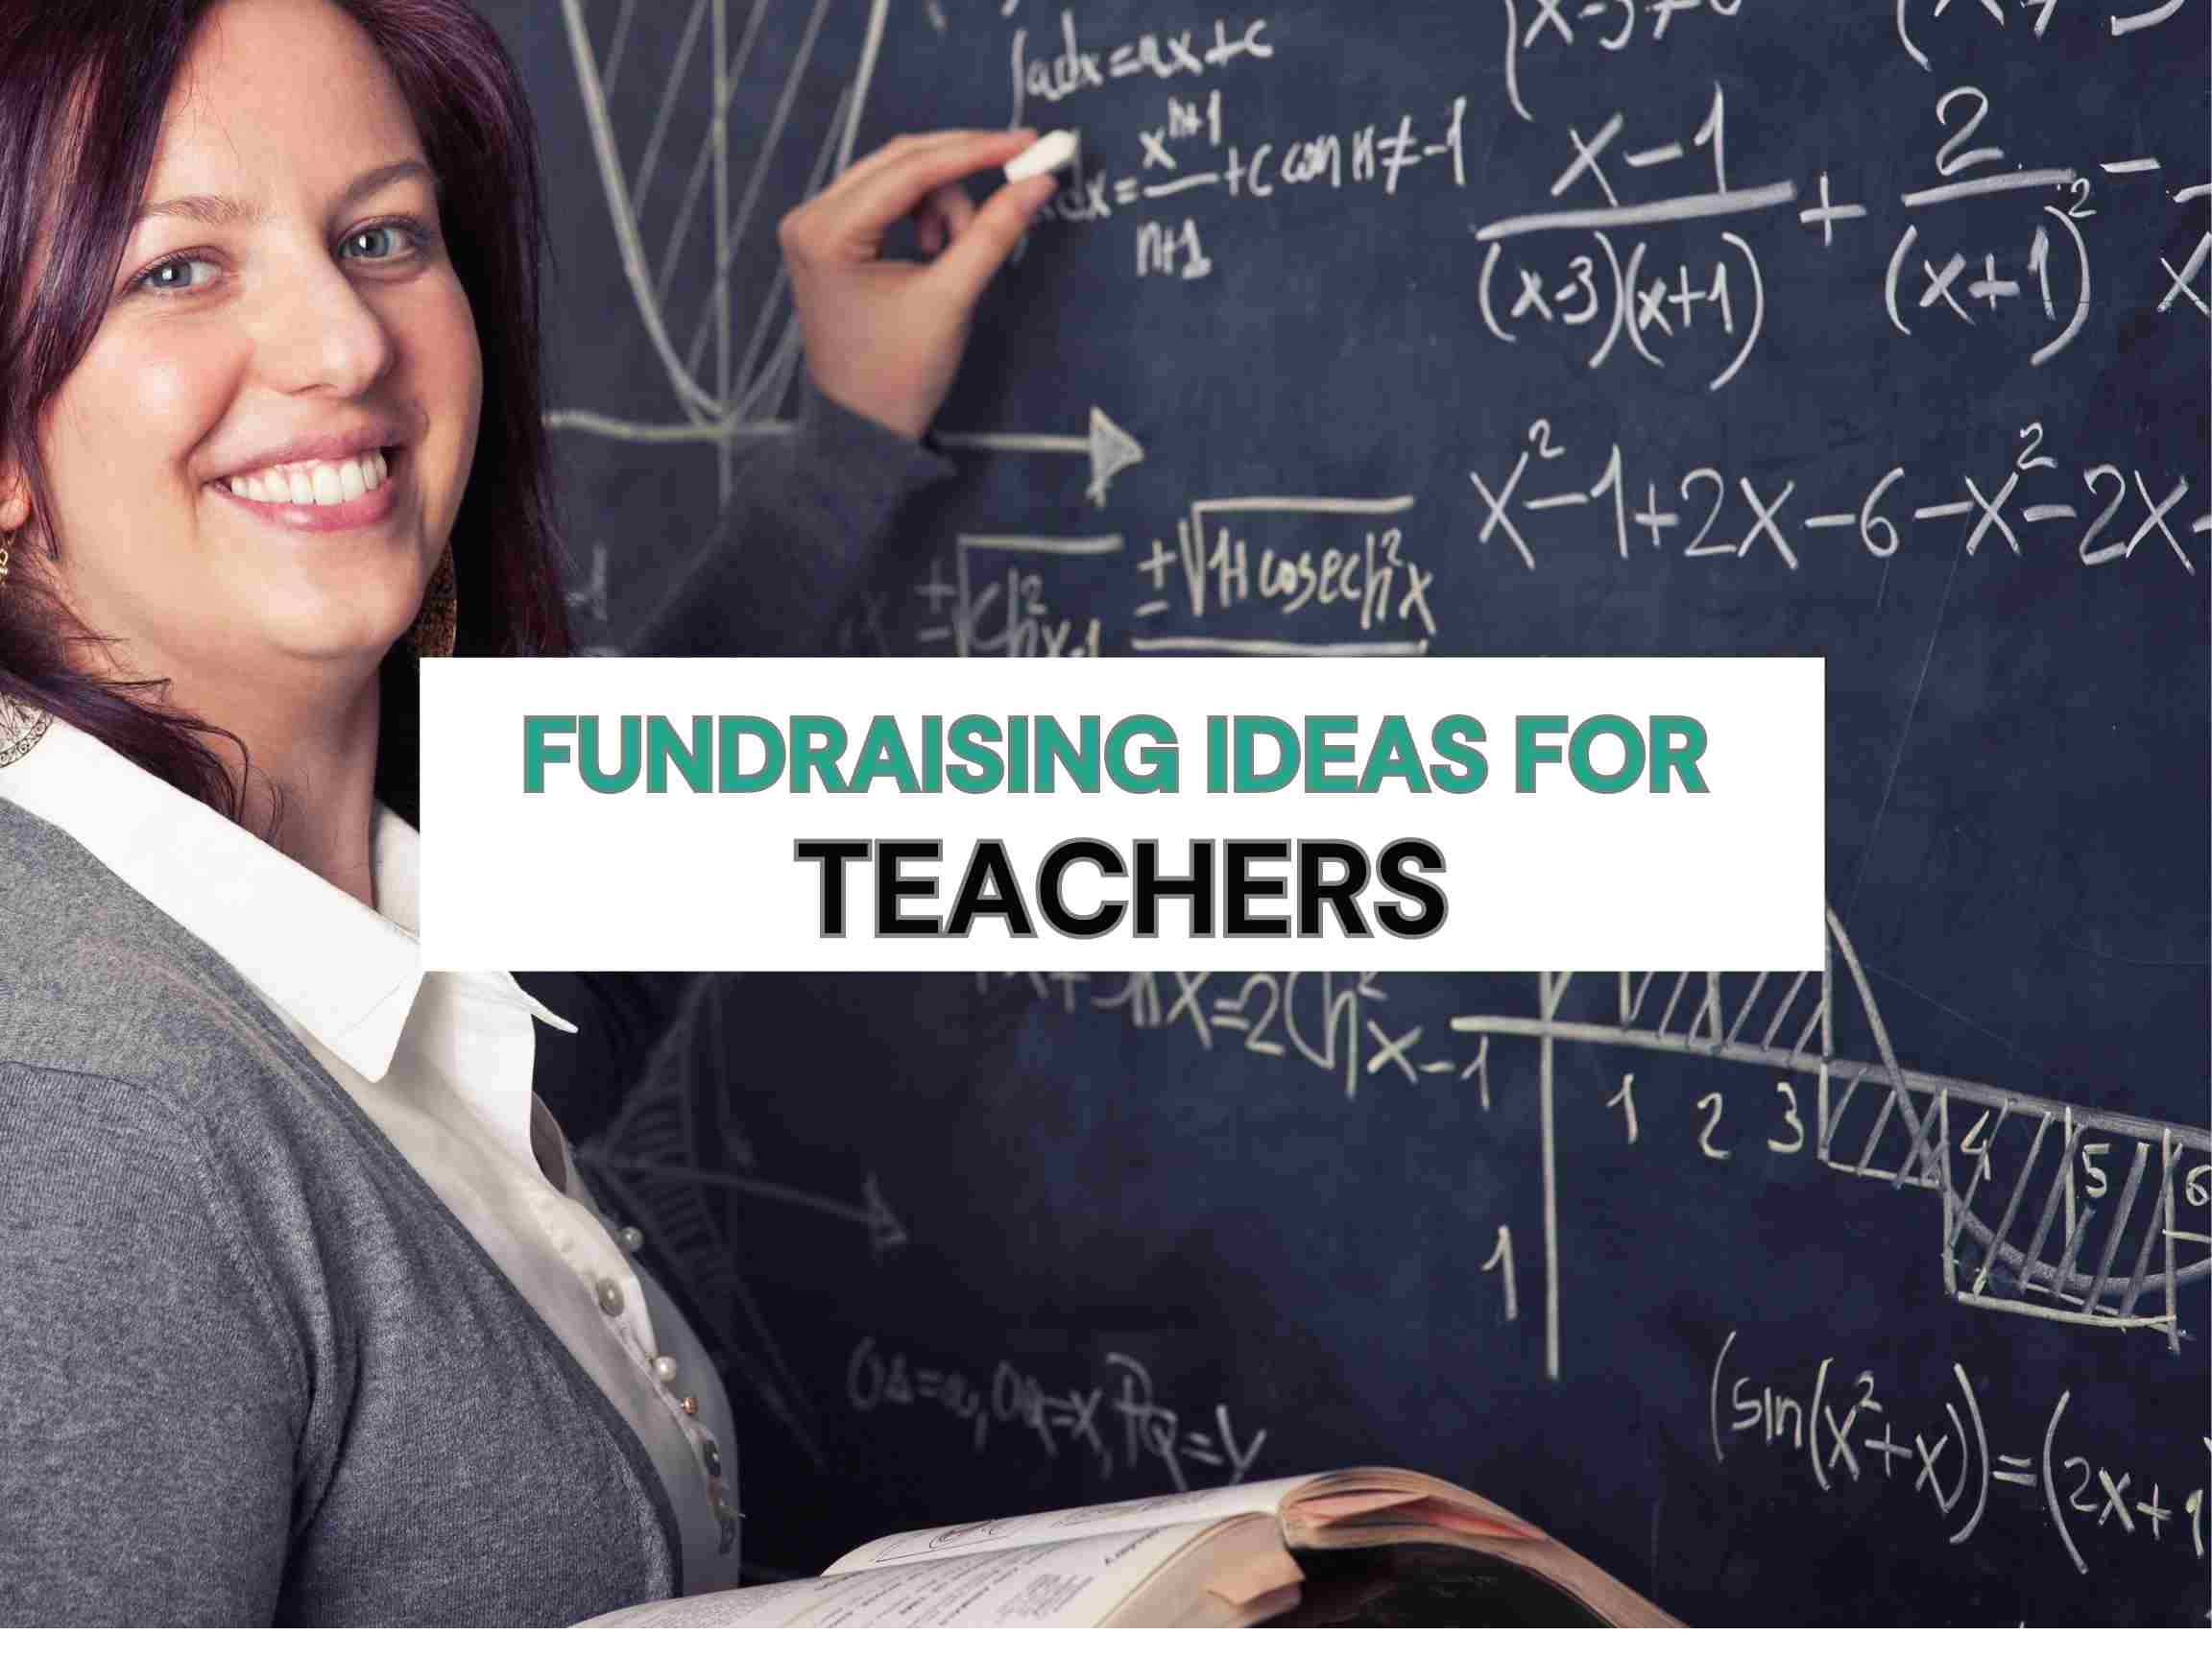 Fundraising ideas for teachers